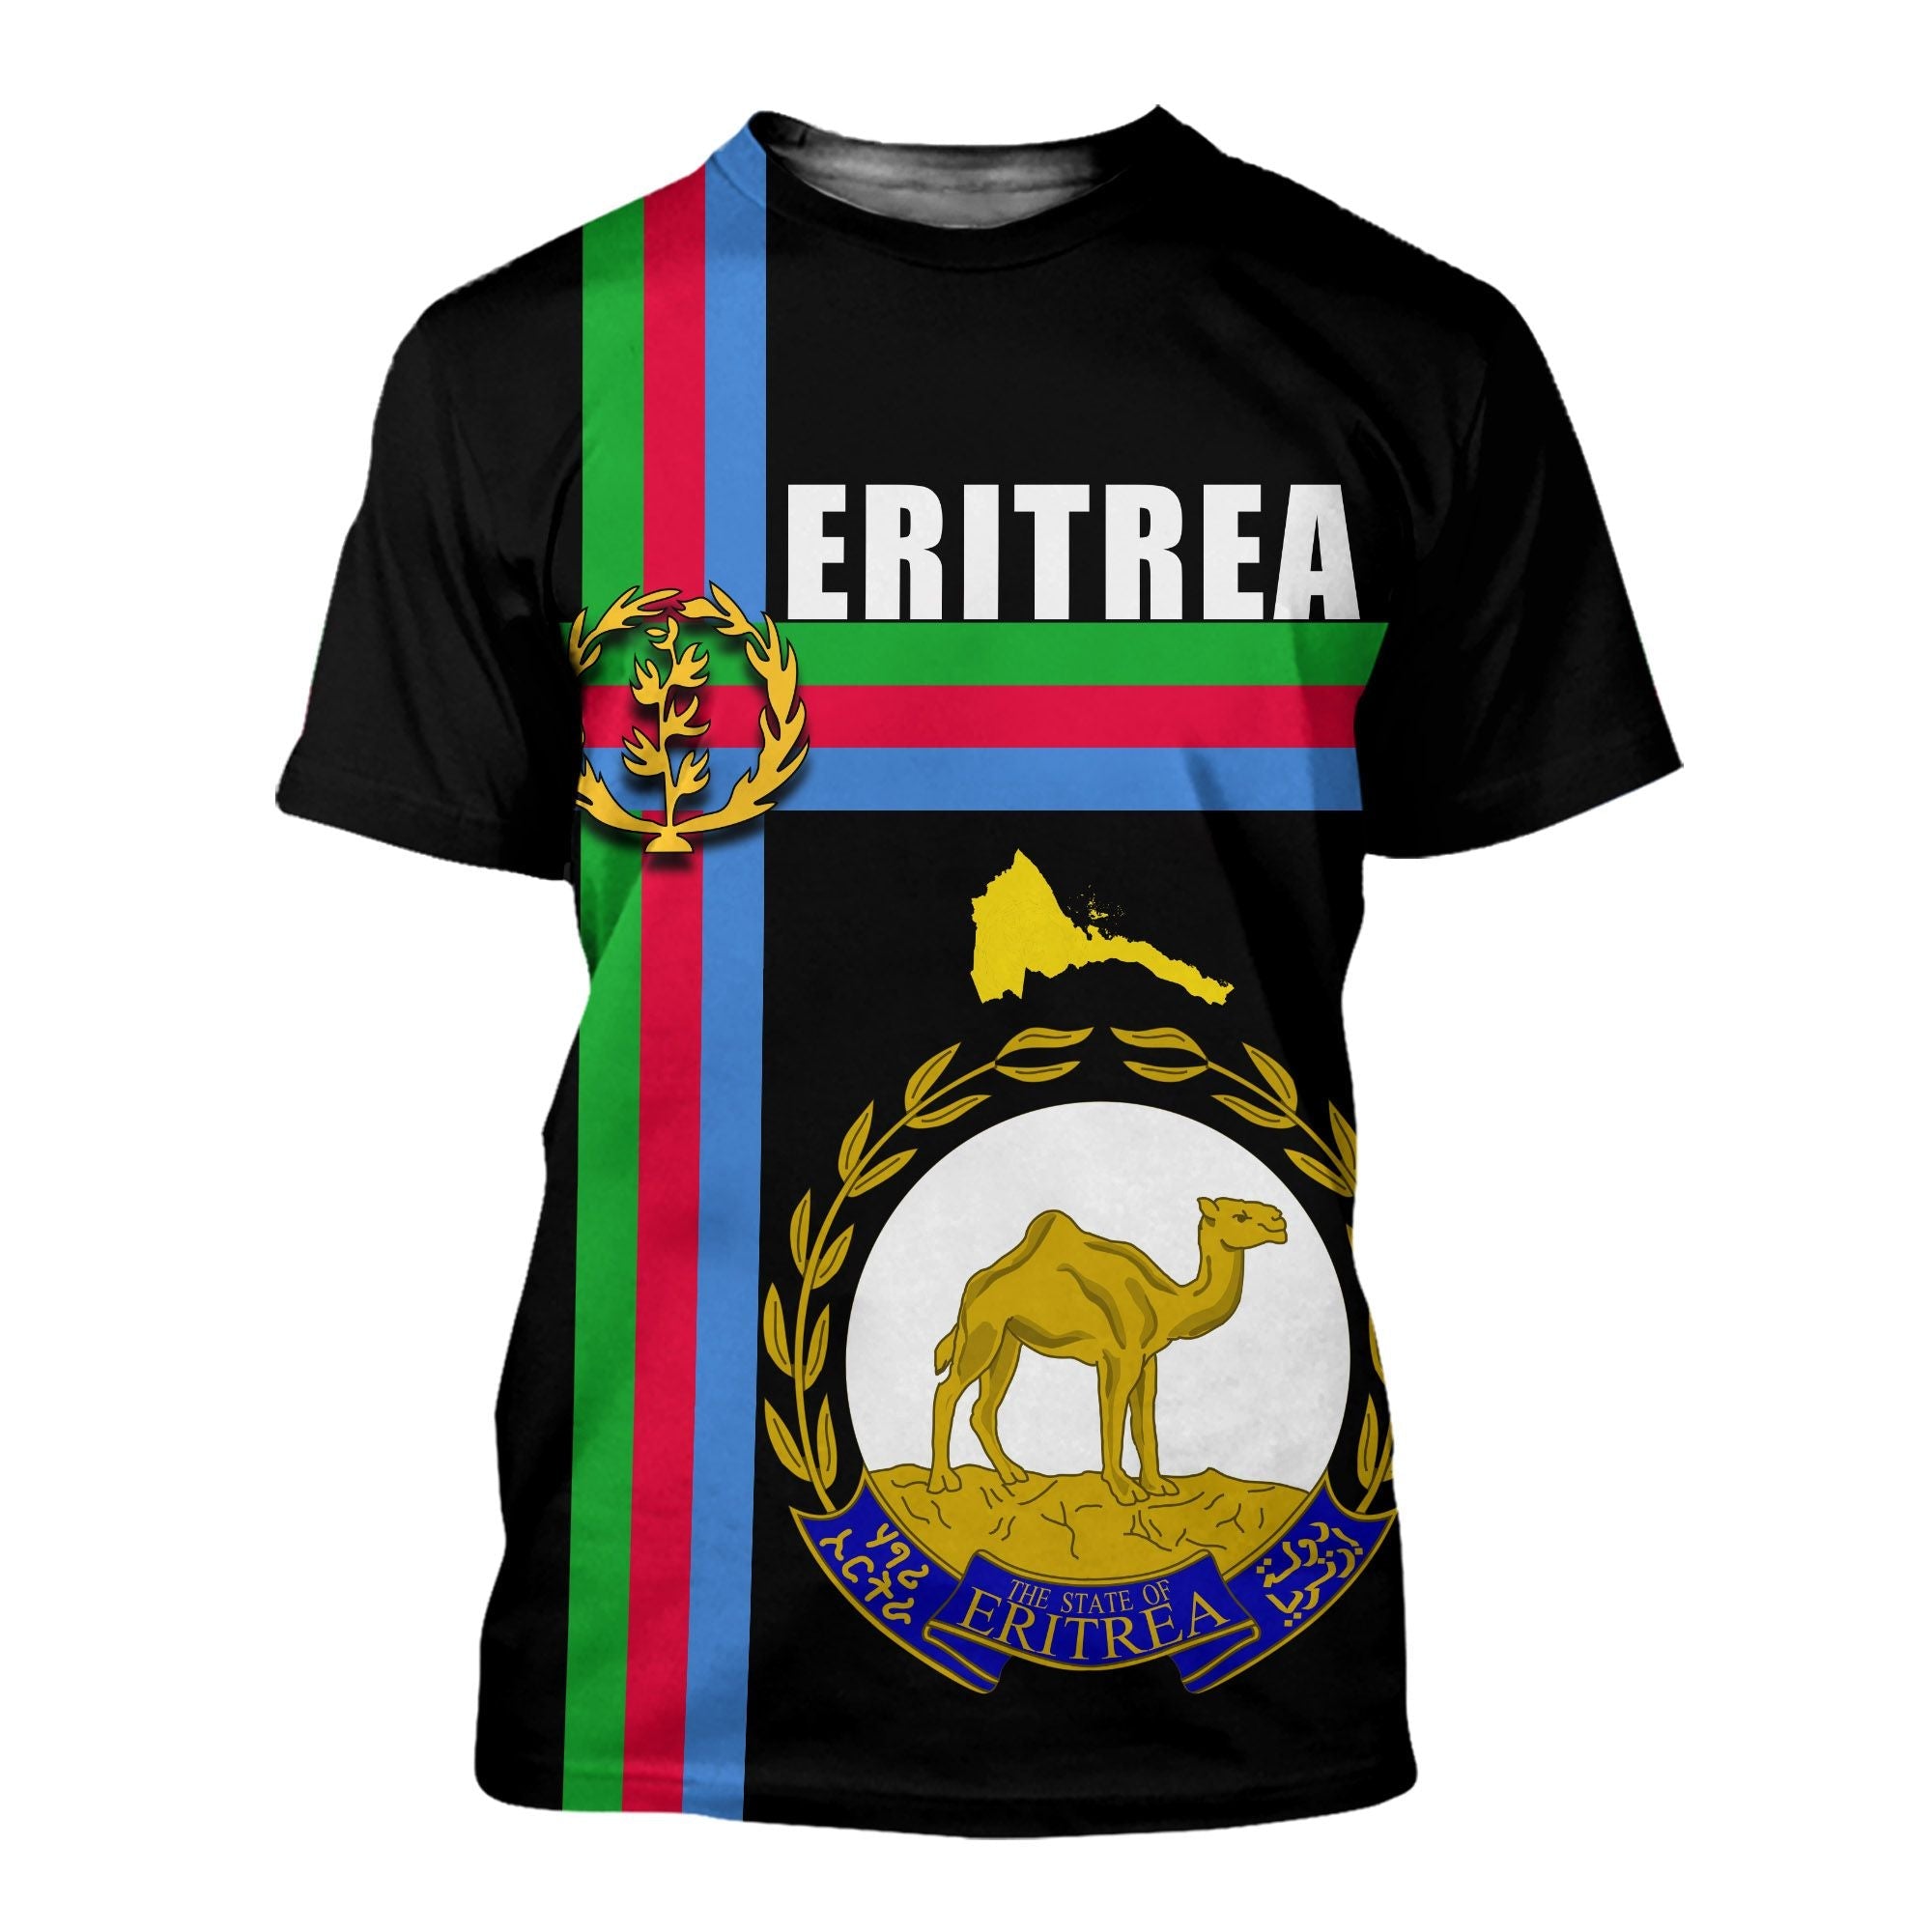 eritrea-coats-of-arms-t-shirt-black